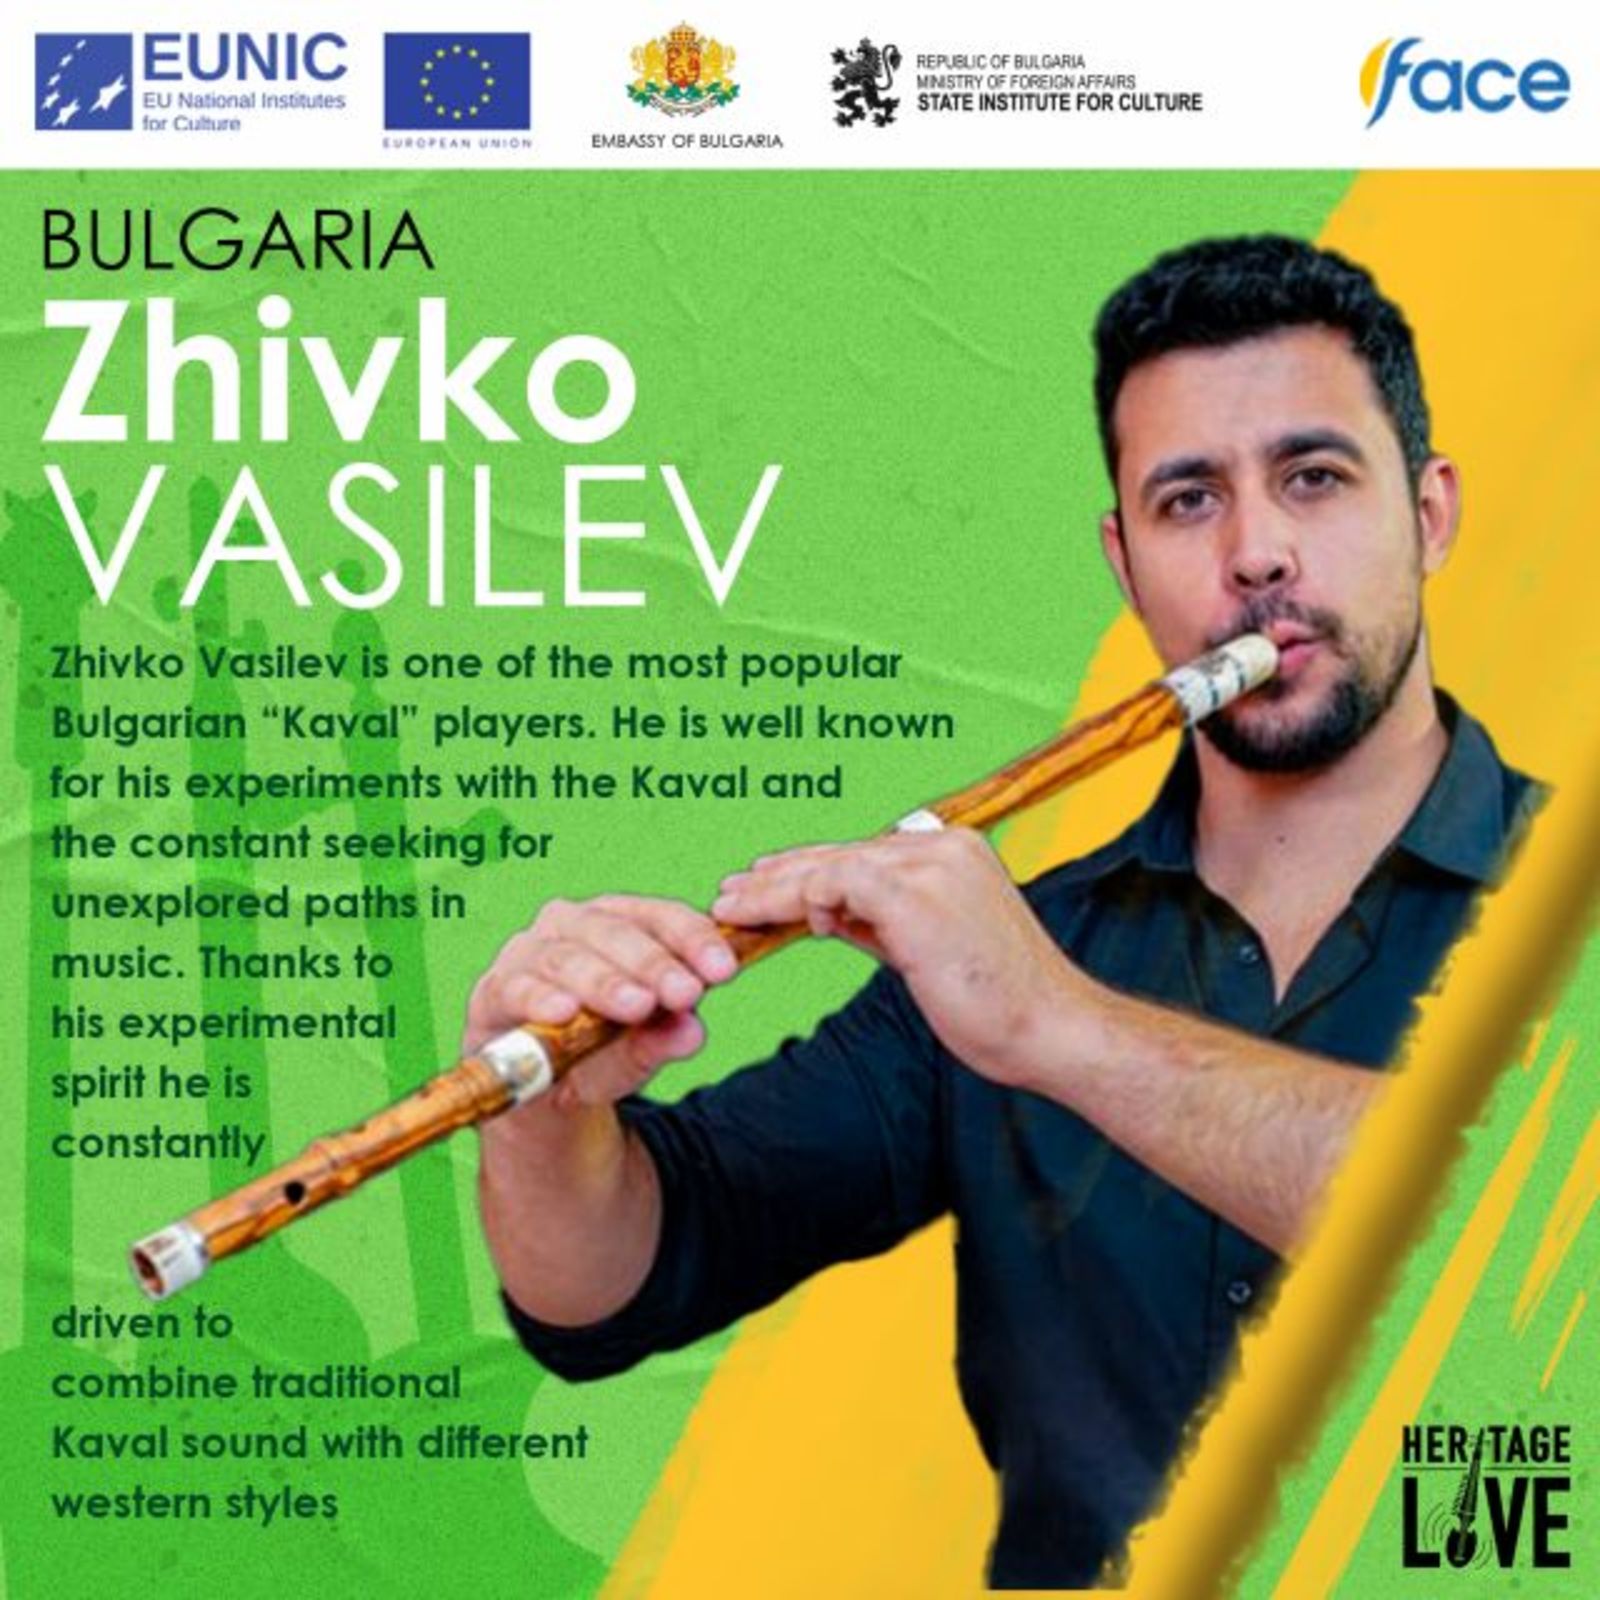 Българско участие в първия проект на клъстера на EUNIC в Пакистан - „Heritage Live - Music of Pakistan“